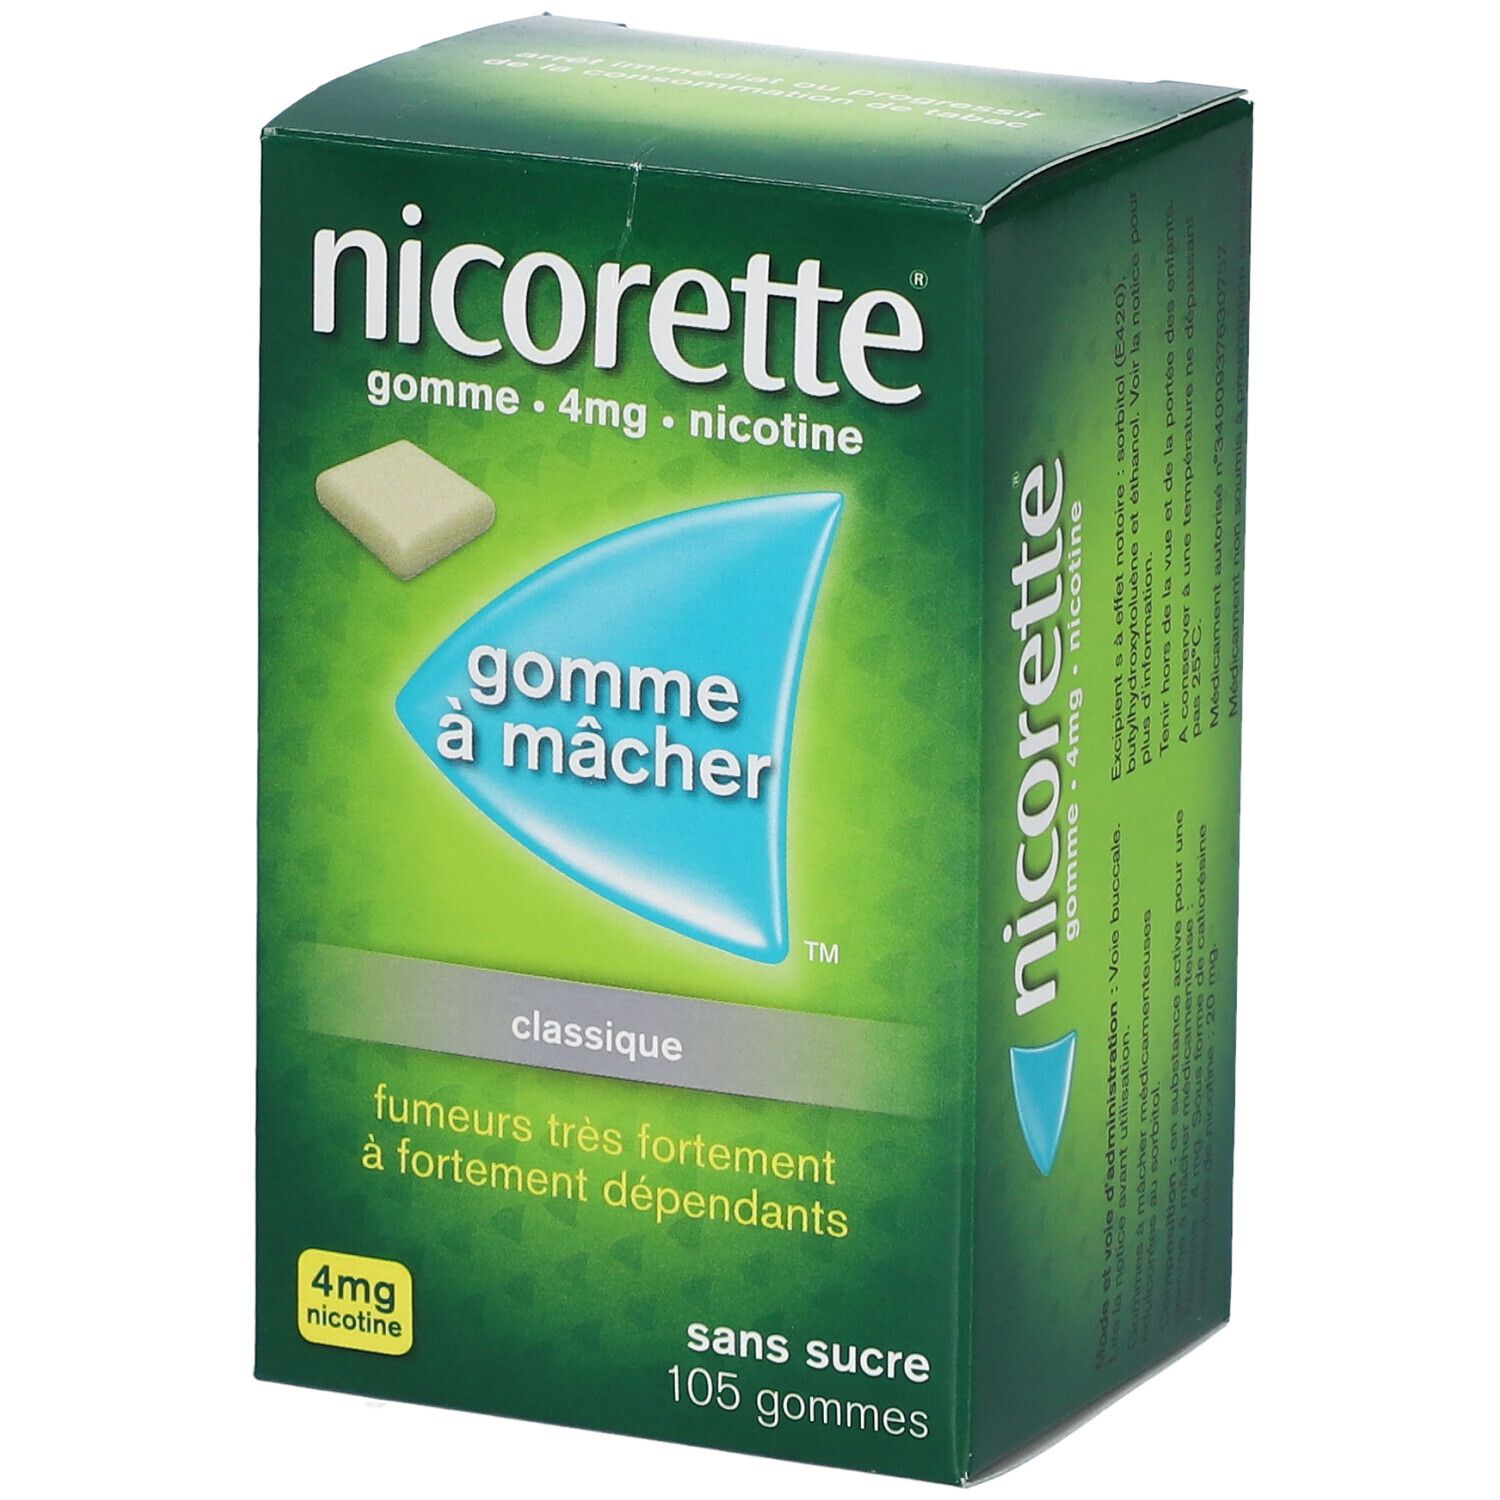 Nicorette® Gomme à mâcher s/s 4 mg